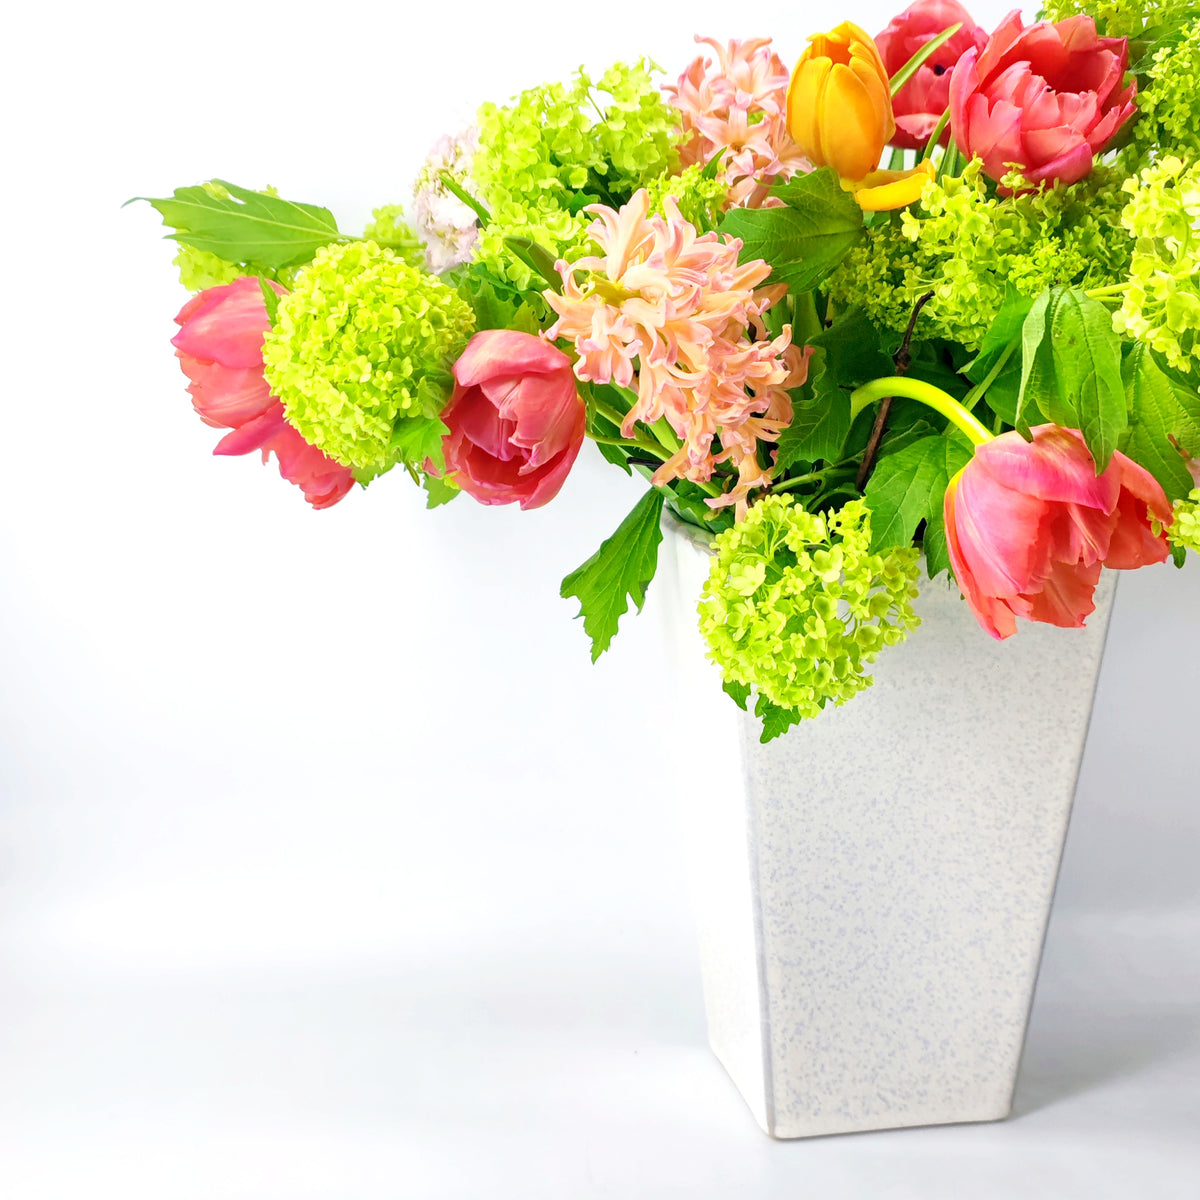 Unsere weißen schönen Vasen wurden in Lautenbach von Menschen mit und ohne Behinderung hergestellt. In dieser eckigen weißen Vase siehst du einen bunten Blumenstrauss arrangiert. 